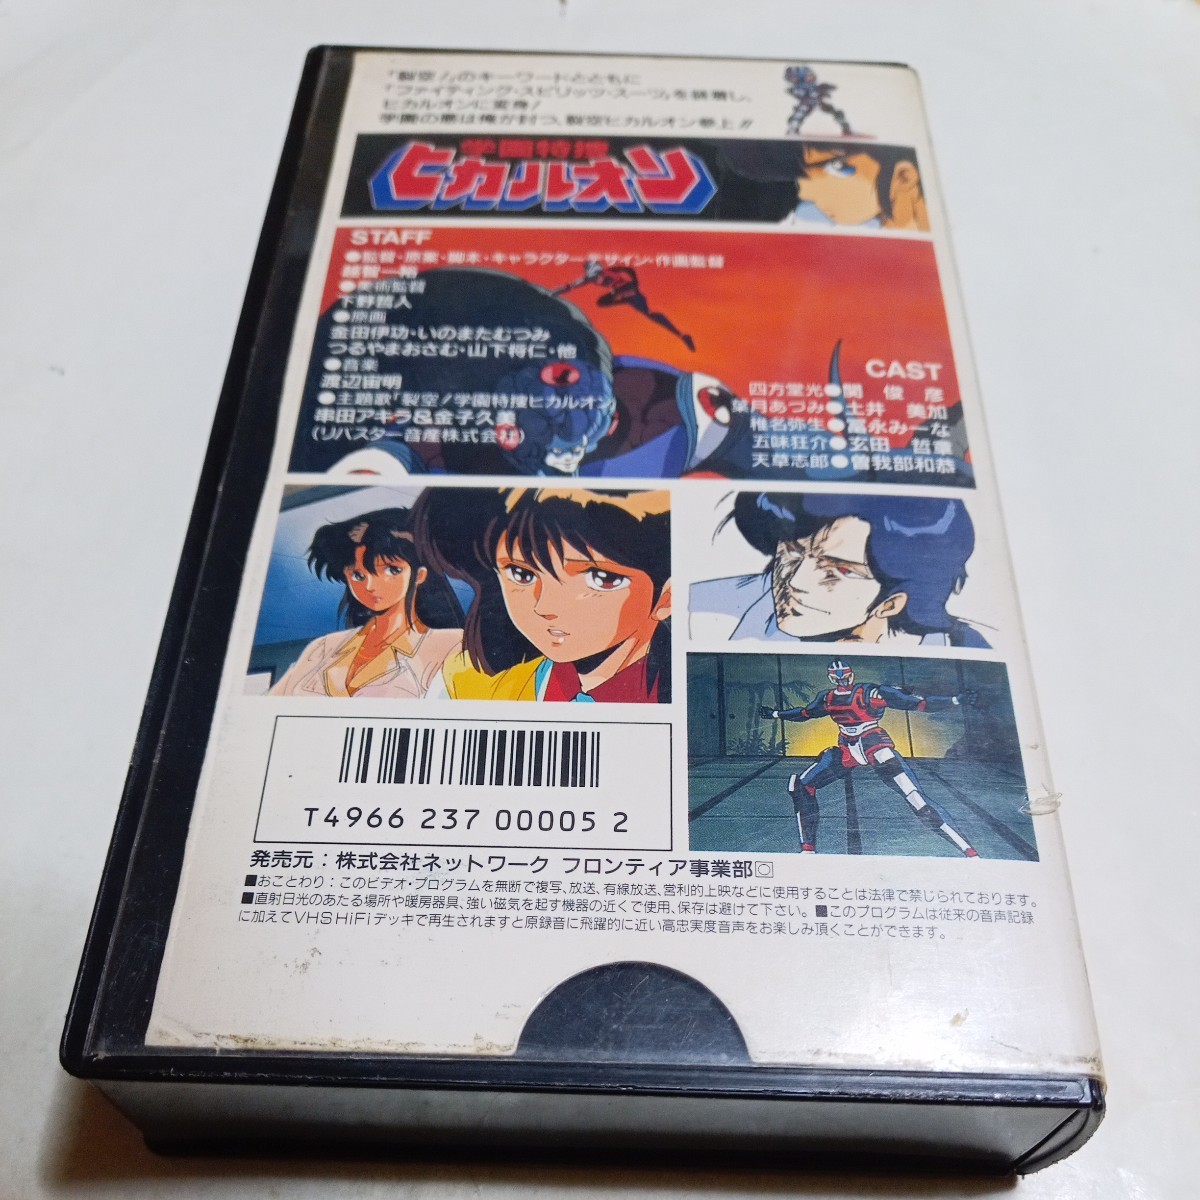 VHS видео OVA учебное заведение Special .hikaru on DVD не продажа произведение постановка *.. один . исходная картина * золотой рисовое поле ..,.. кроме того, ... др. выступление *..., земля . прекрасный .,...-.